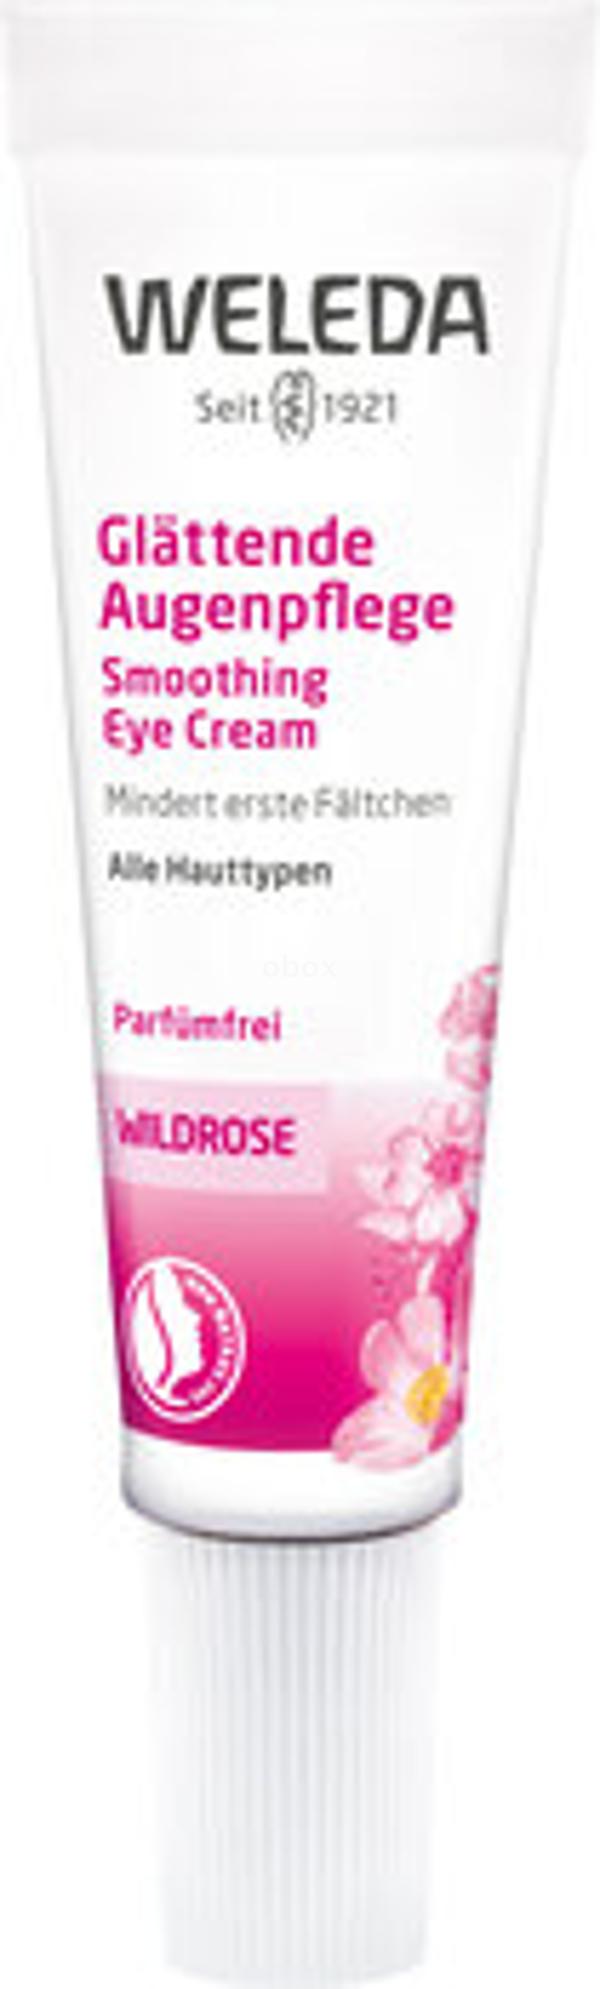 Produktfoto zu Wildrose Glättende Augencreme, 10 ml